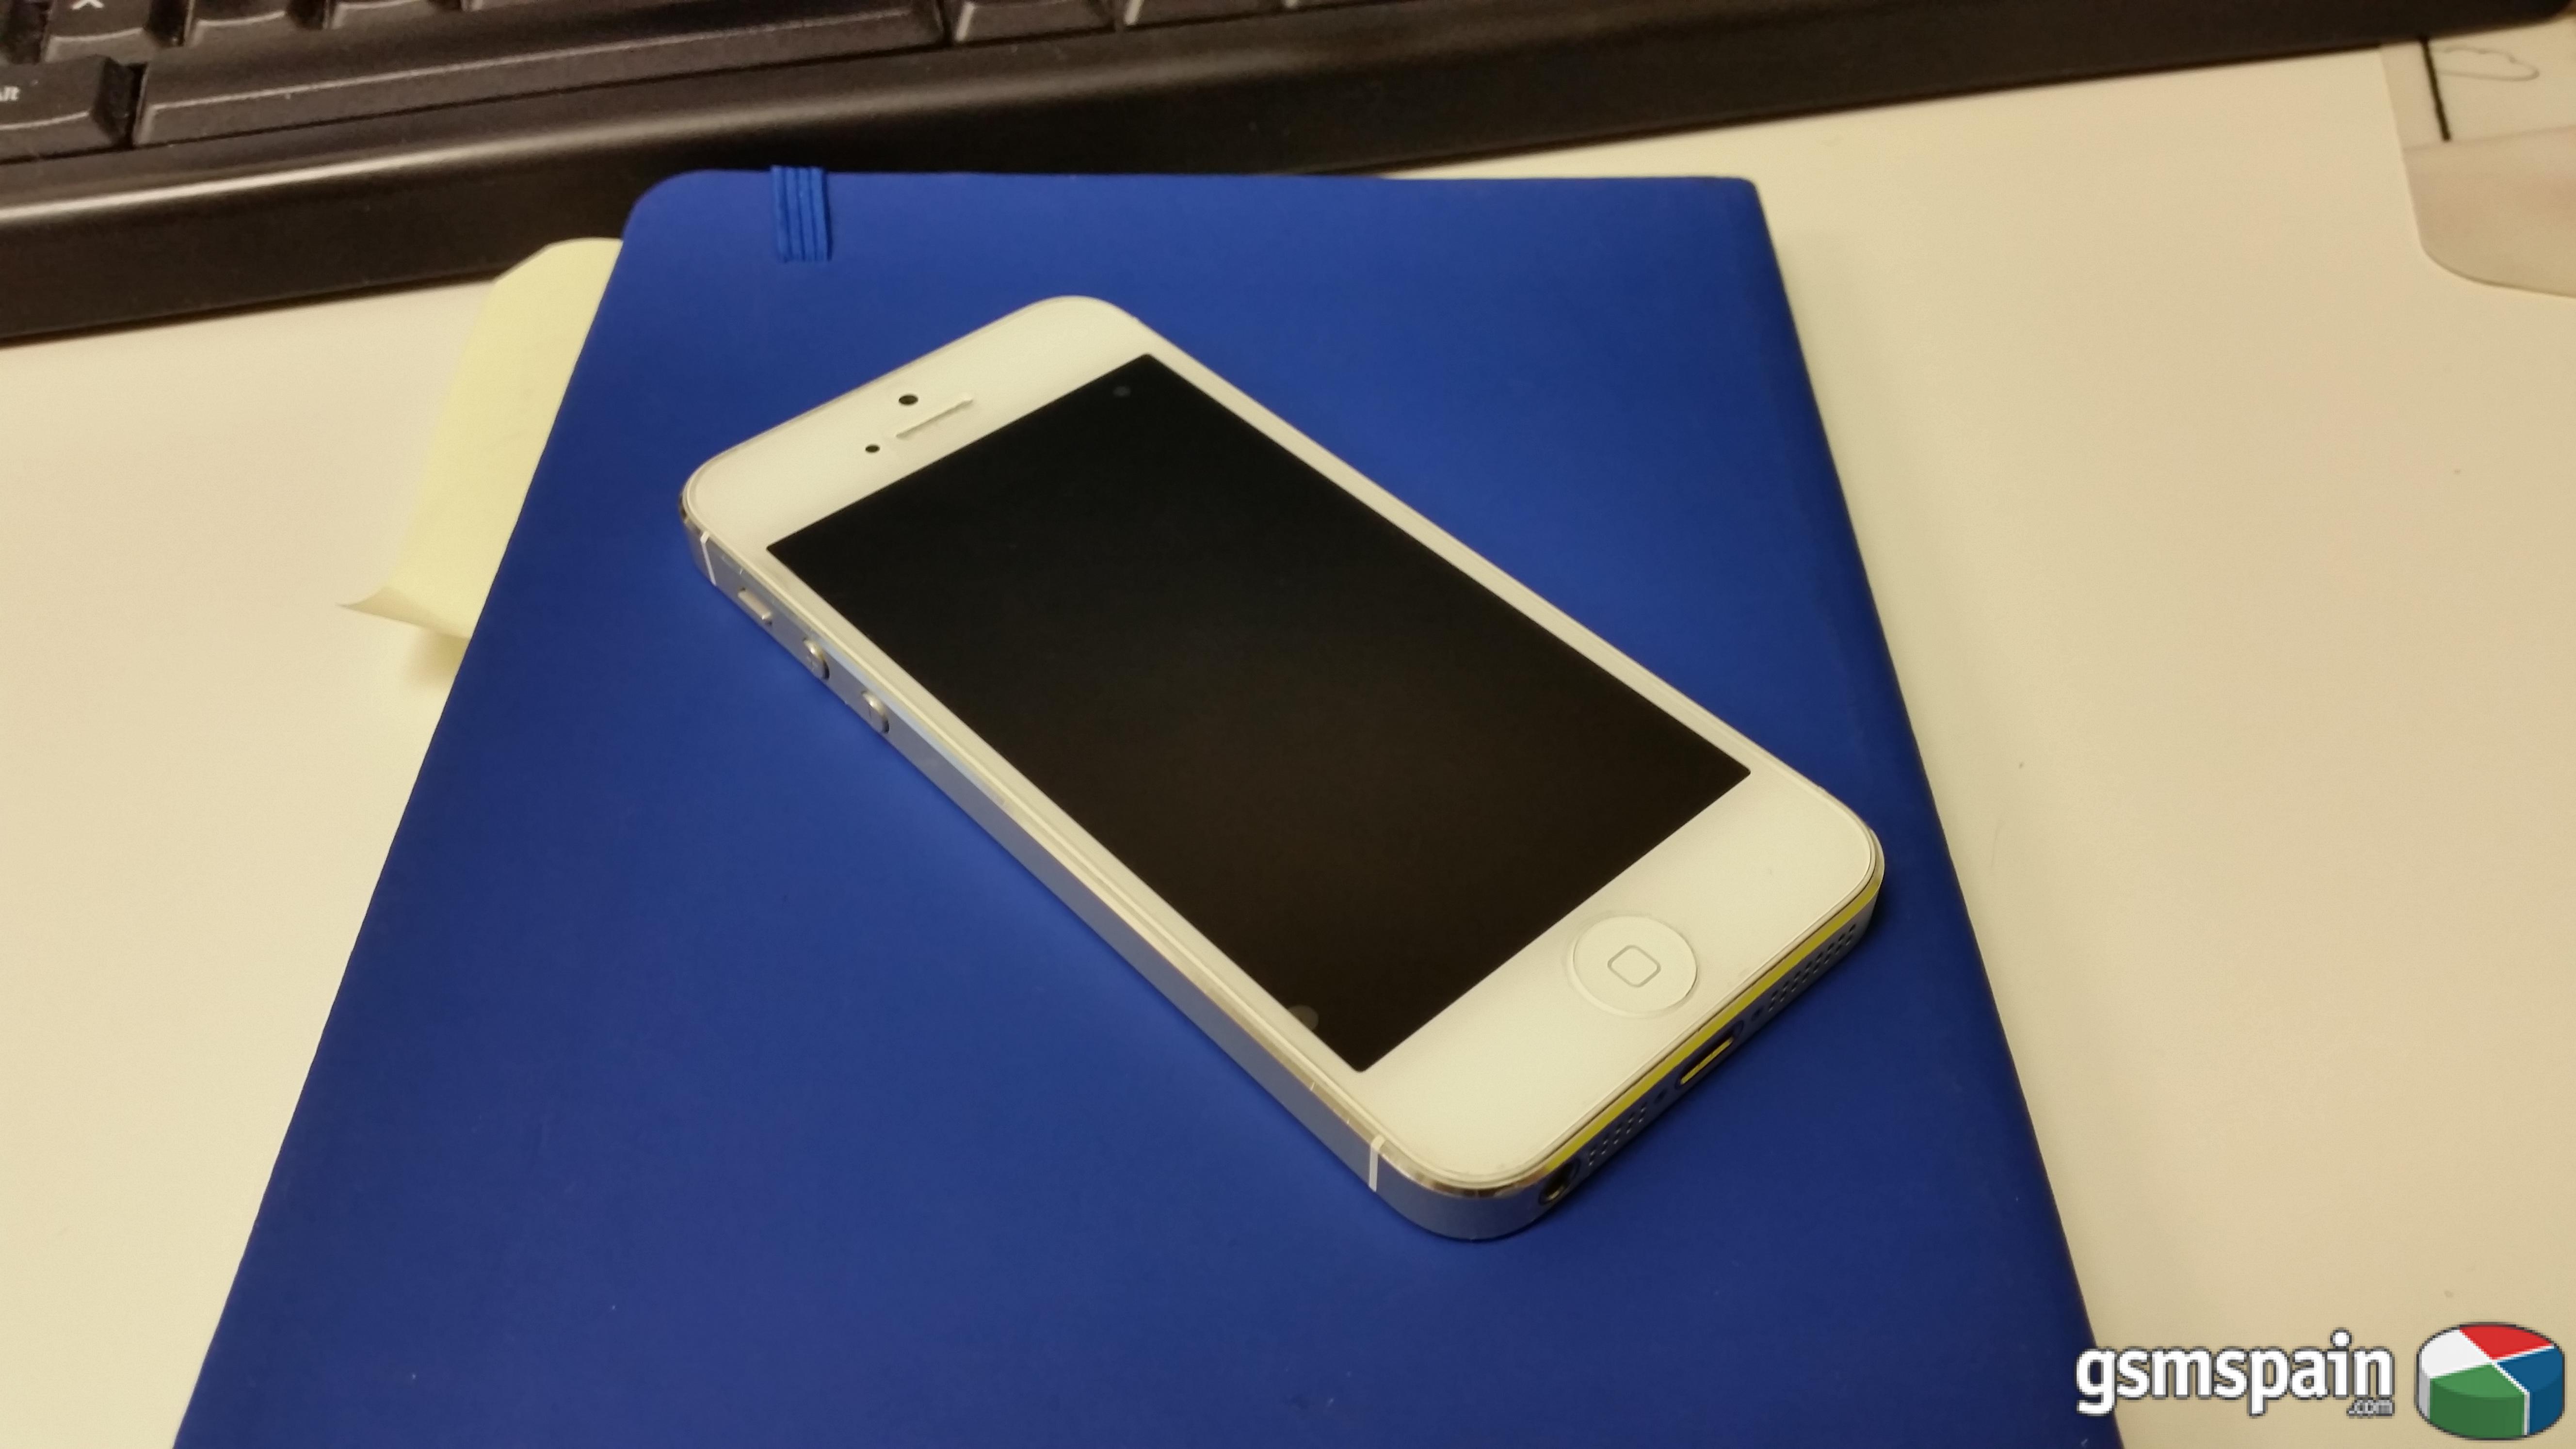 [VENDO] Iphone 5 Blanco 16gb - Vodafone - Precio 250